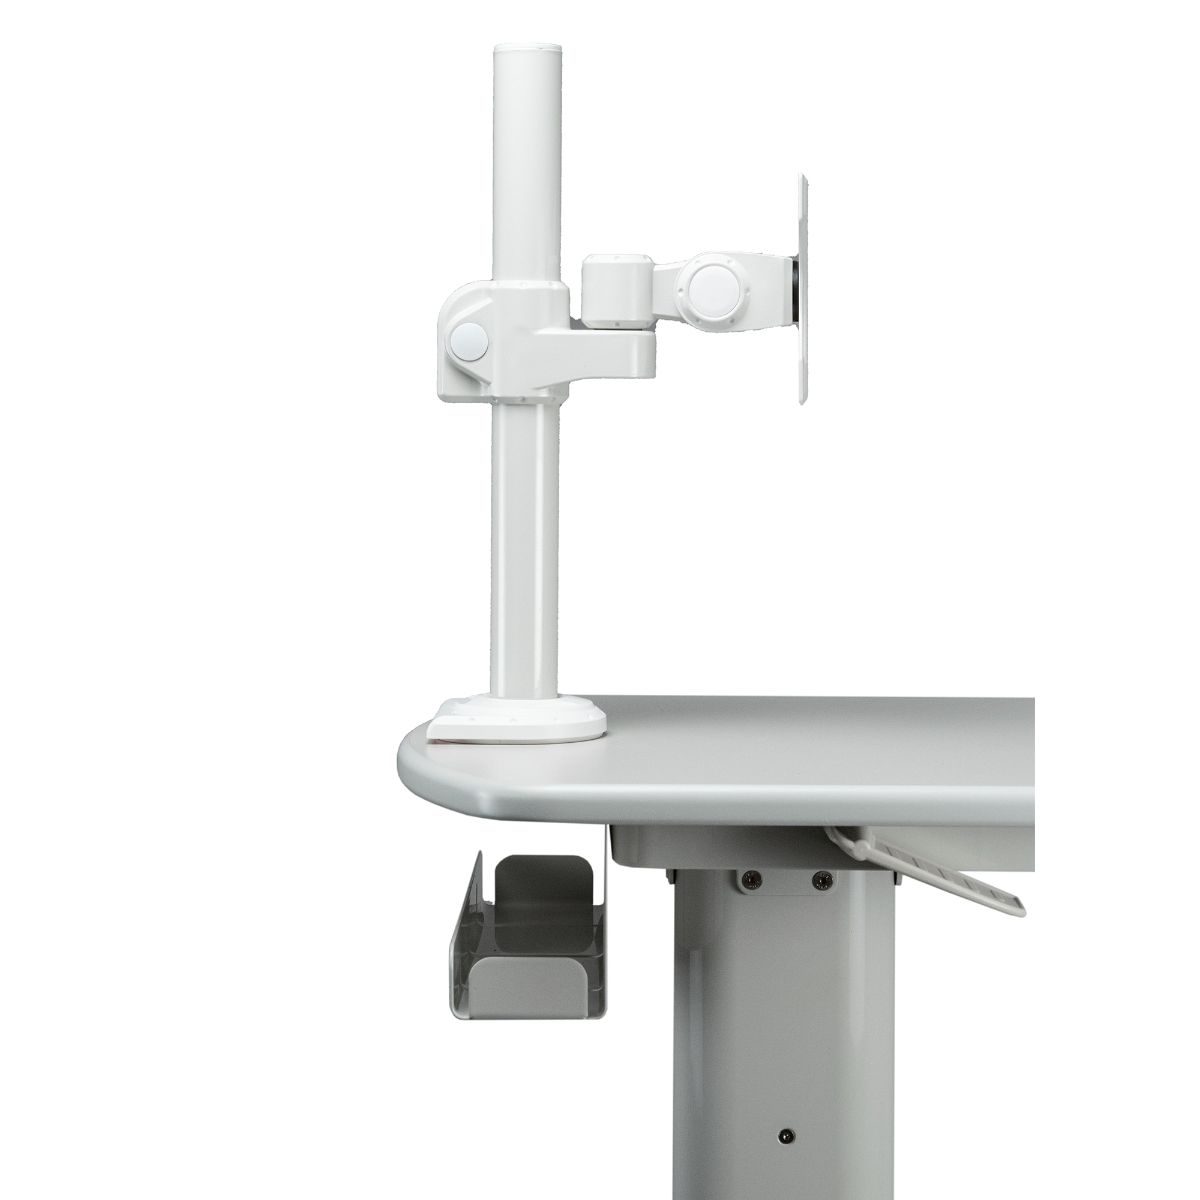 Height-Adjustable Rolling Medical Workstation Cart with Adjustable VESA Arm Mount